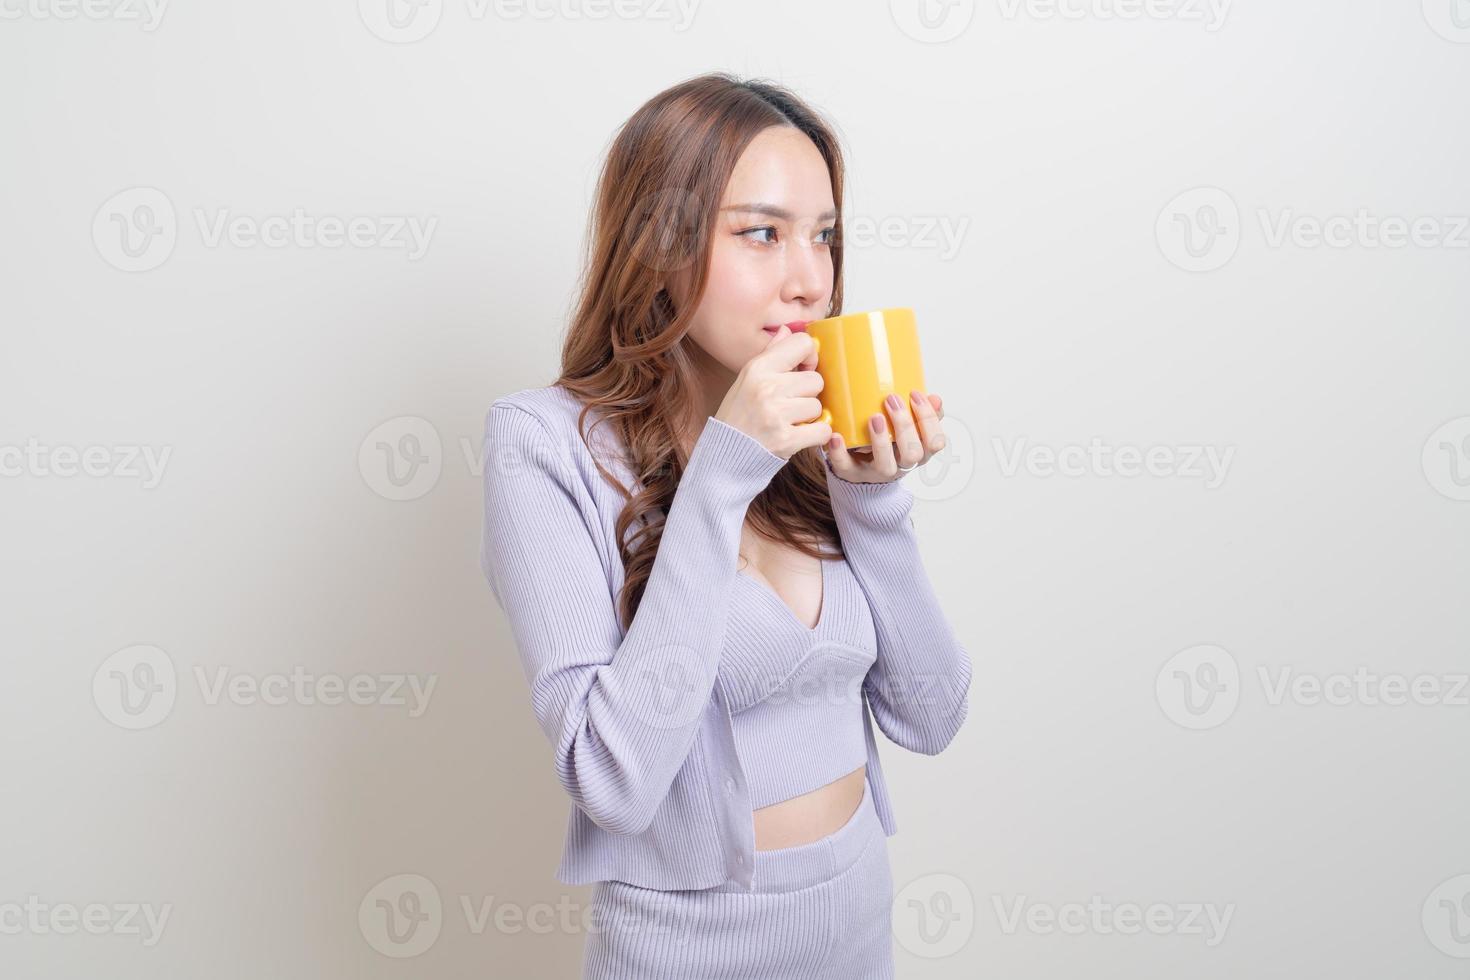 retrato linda mulher asiática segurando uma xícara de café ou caneca no fundo branco foto